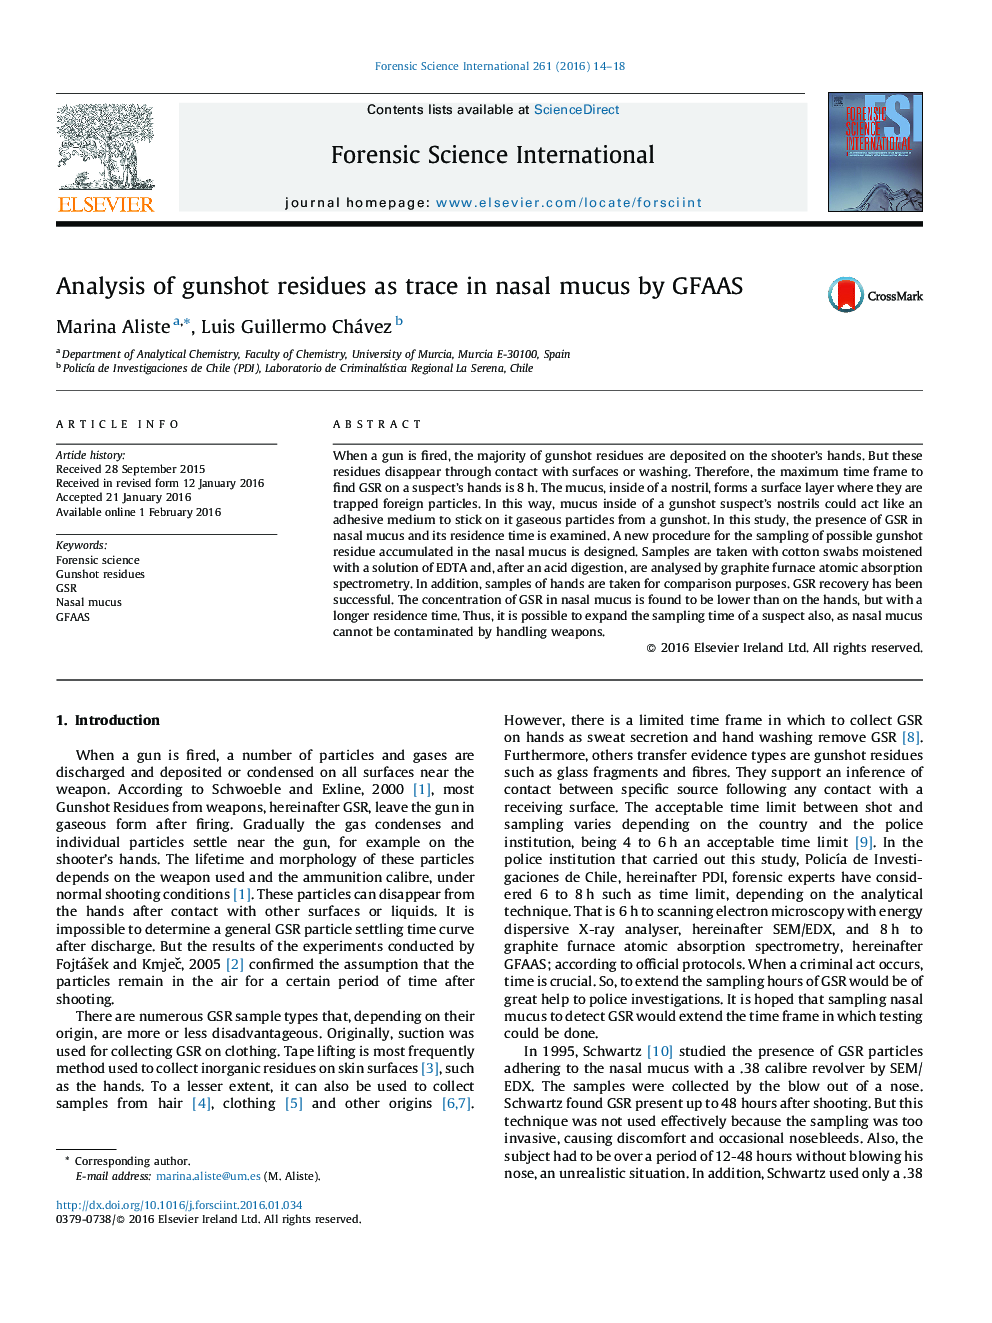 تجزیه و تحلیل از باقی مانده های گلوله به عنوان اثری در مخاط بینی توسط GFAAS